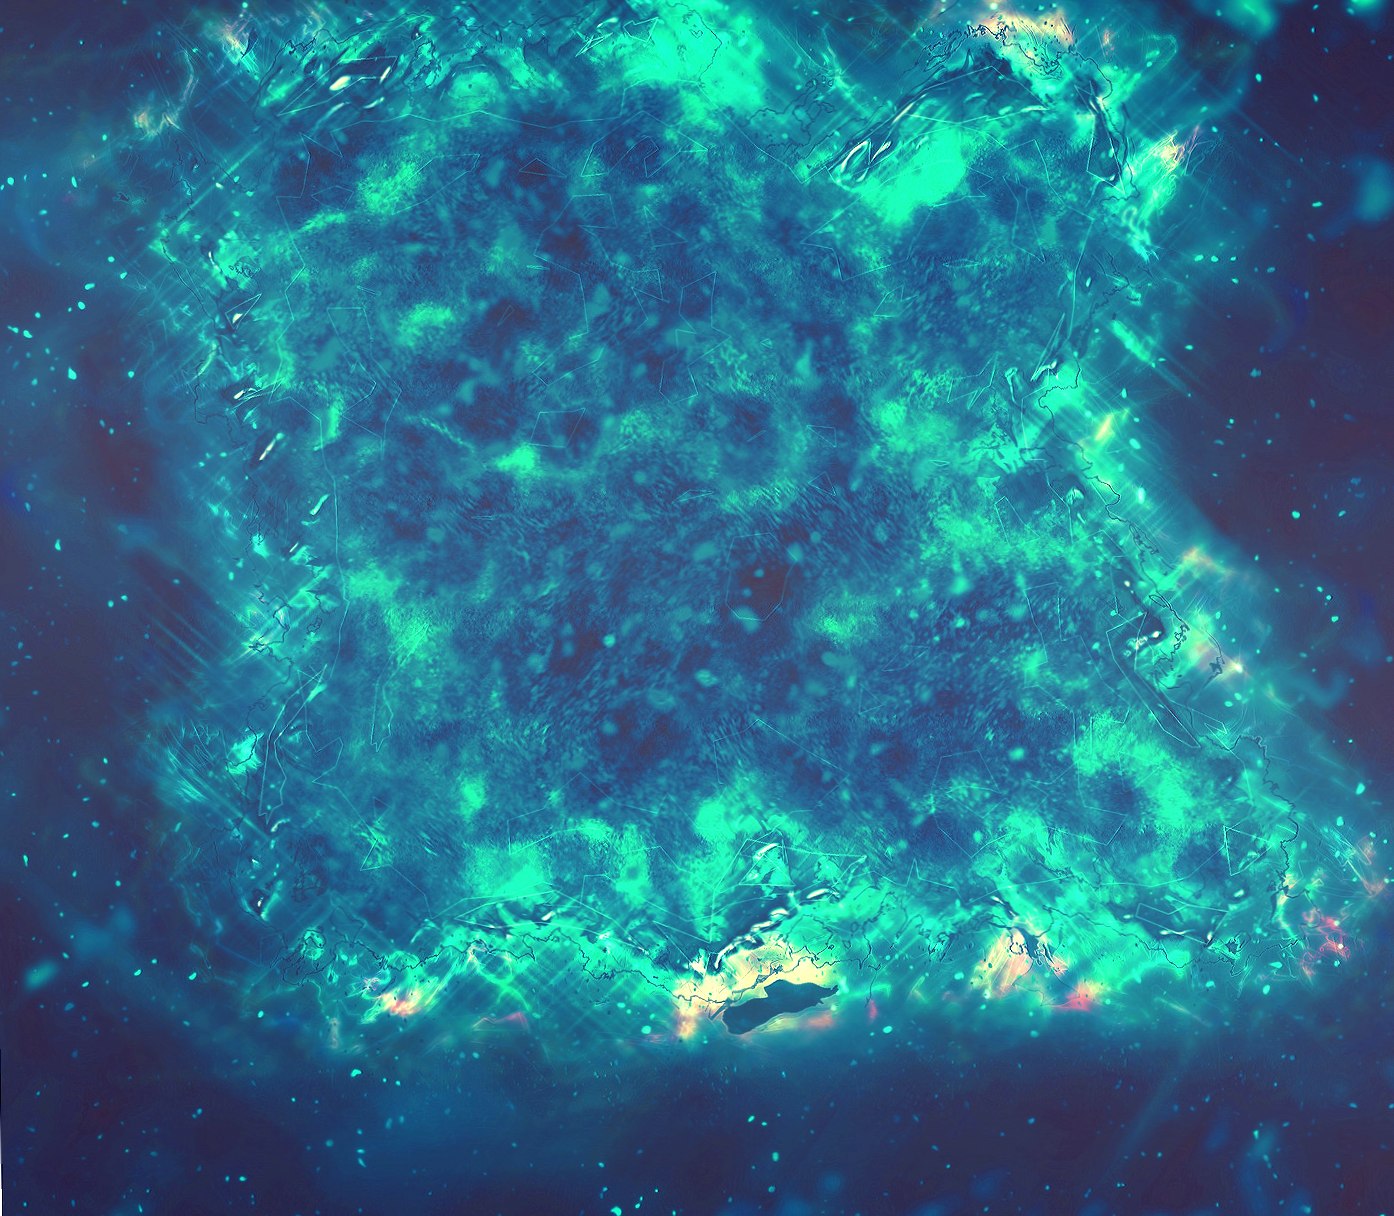 Shambhala Nebula at 1280 x 960 size wallpapers HD quality